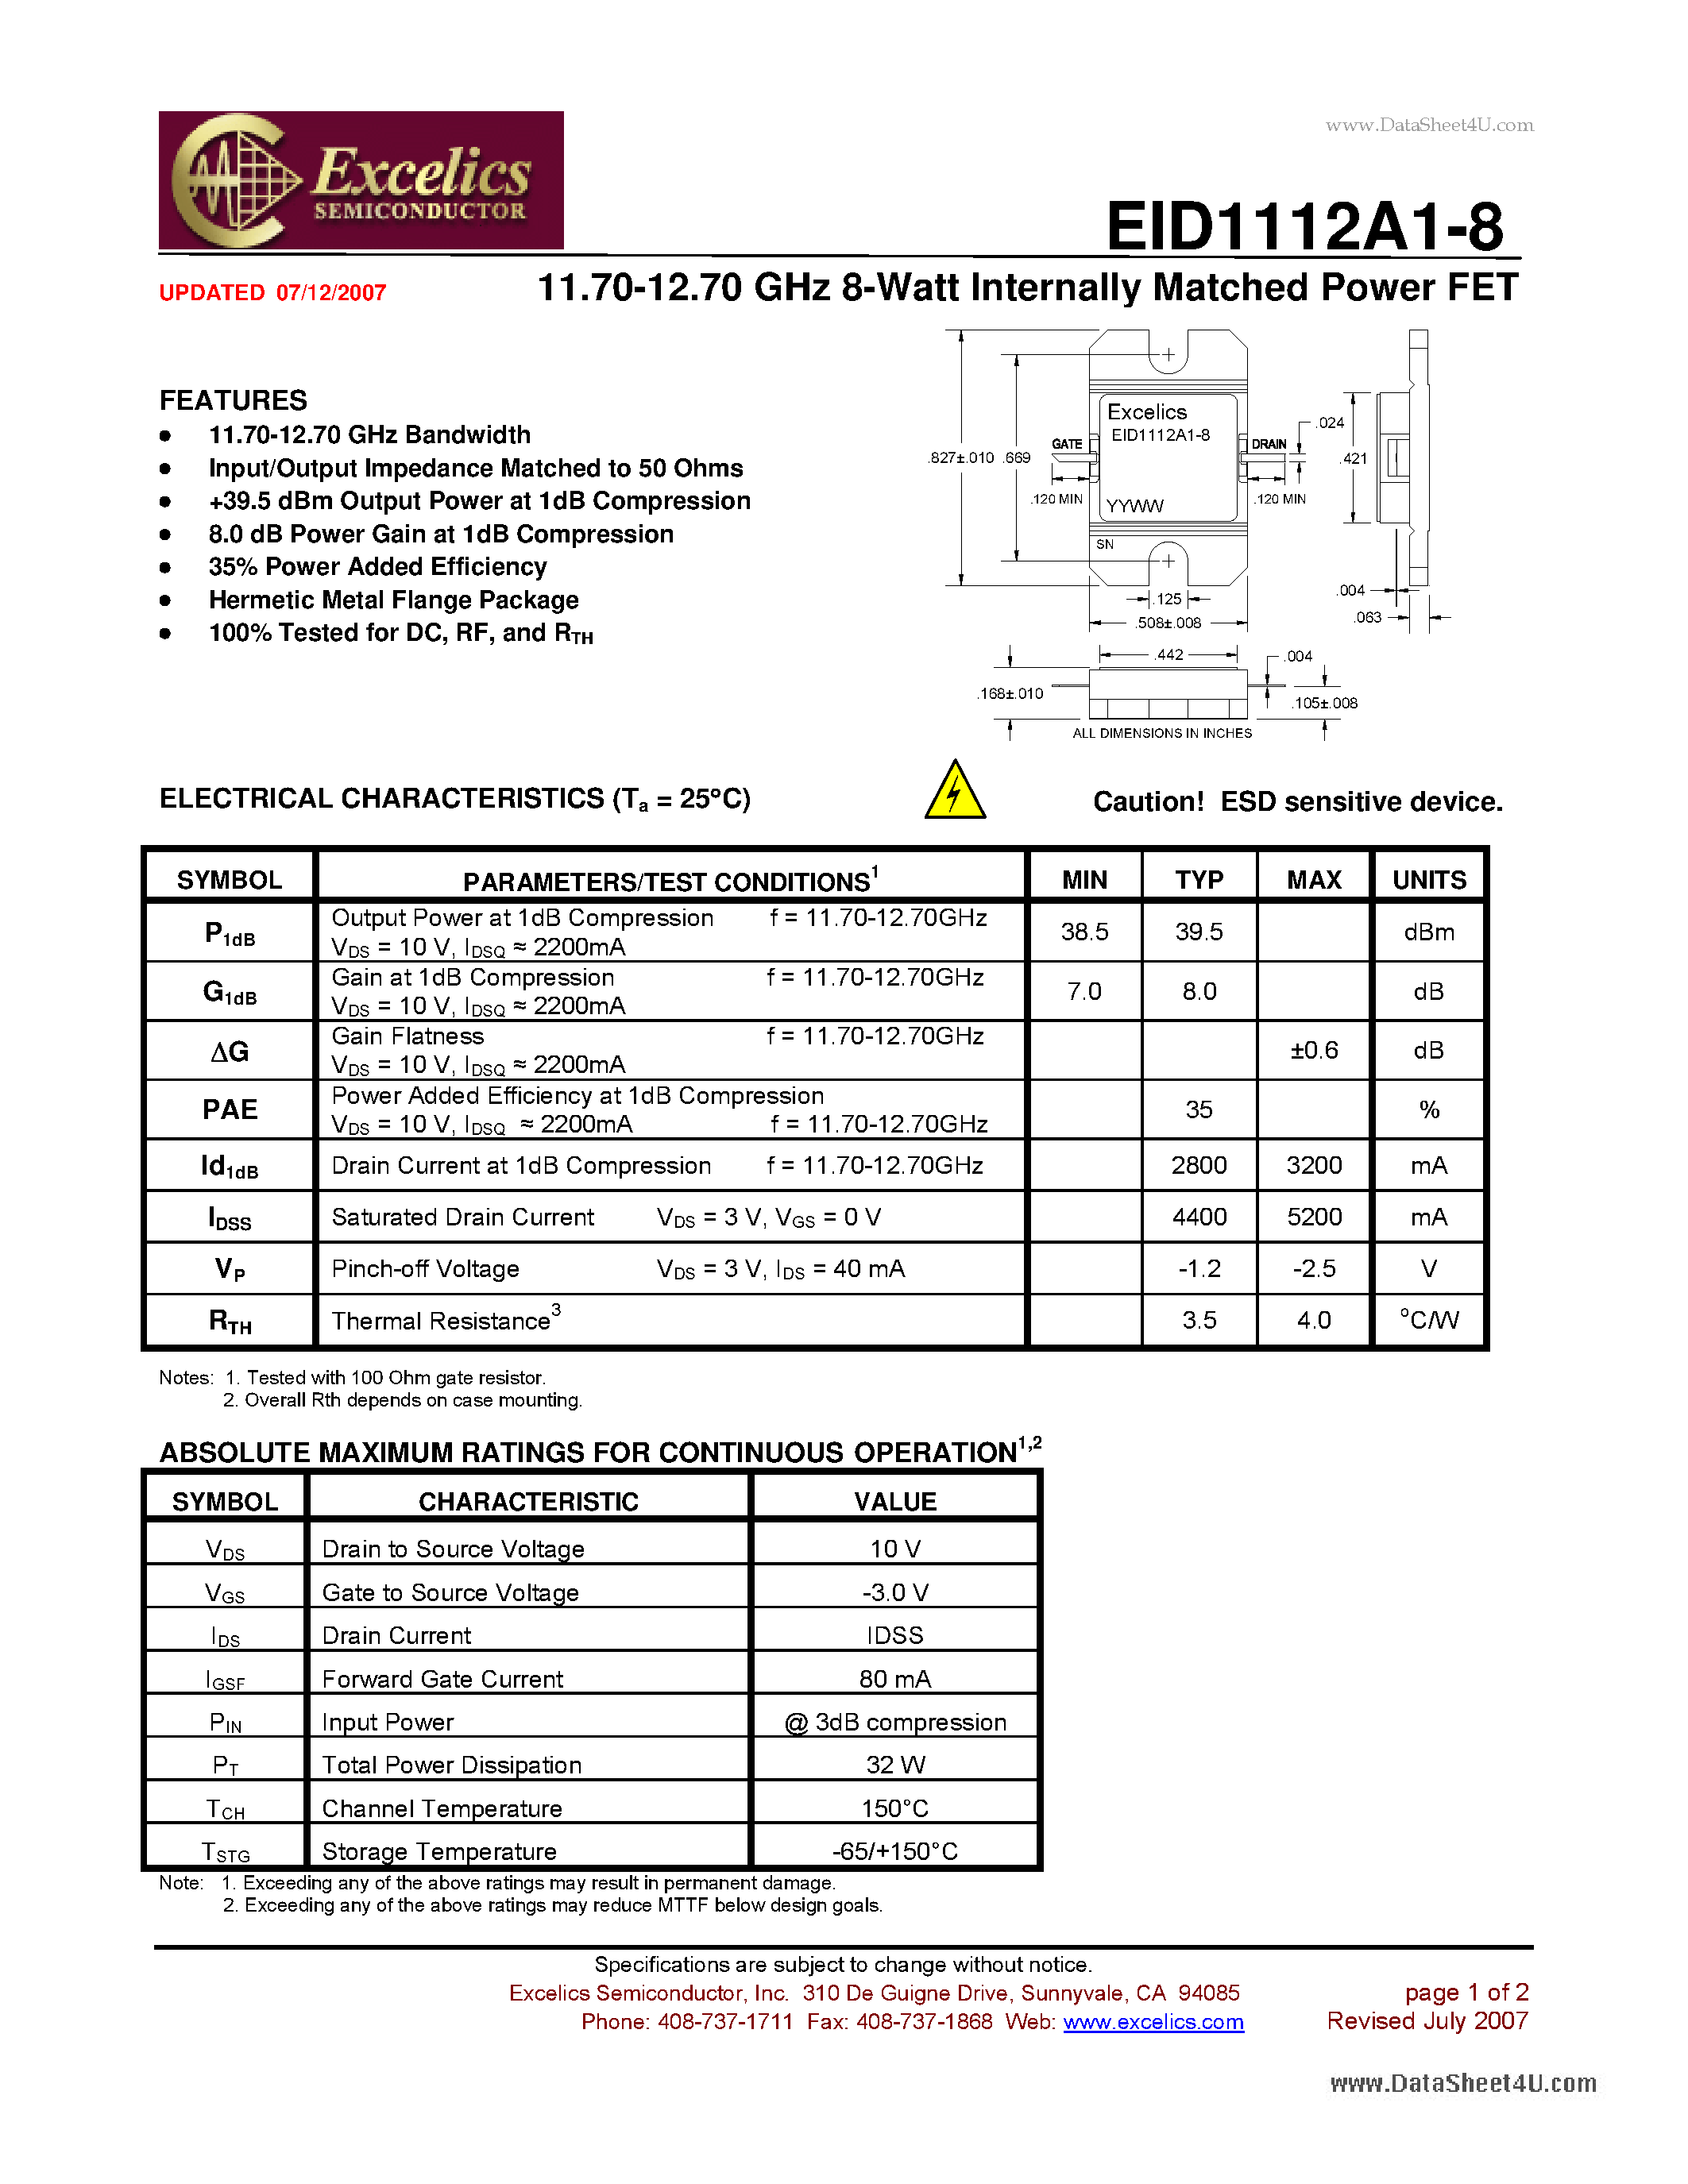 Даташит EID1112A1-8 - 11.70-12.70 GHz 8-Watt Internally Matched Power FET страница 1